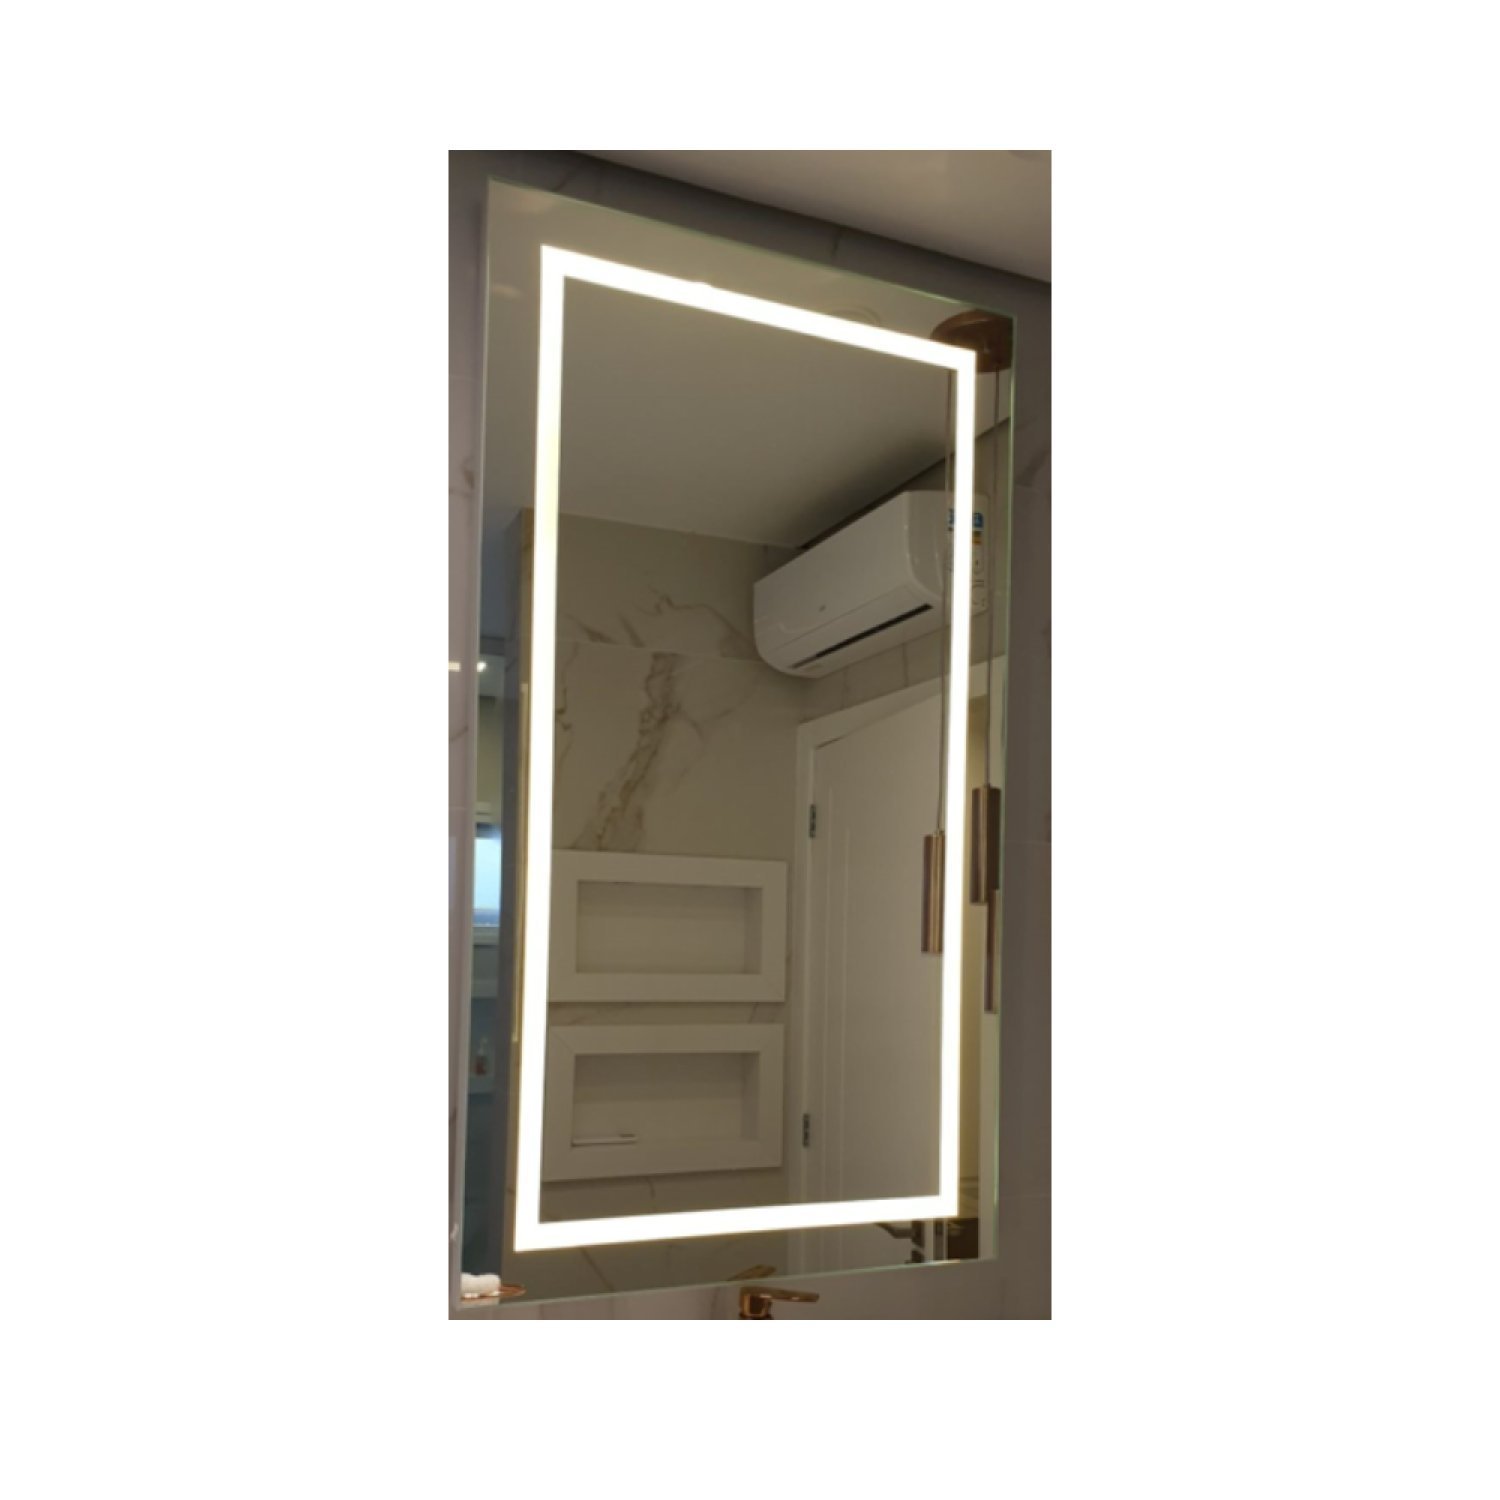 Espelho Camarim 120x80cm Retro Iluminado Led - 4